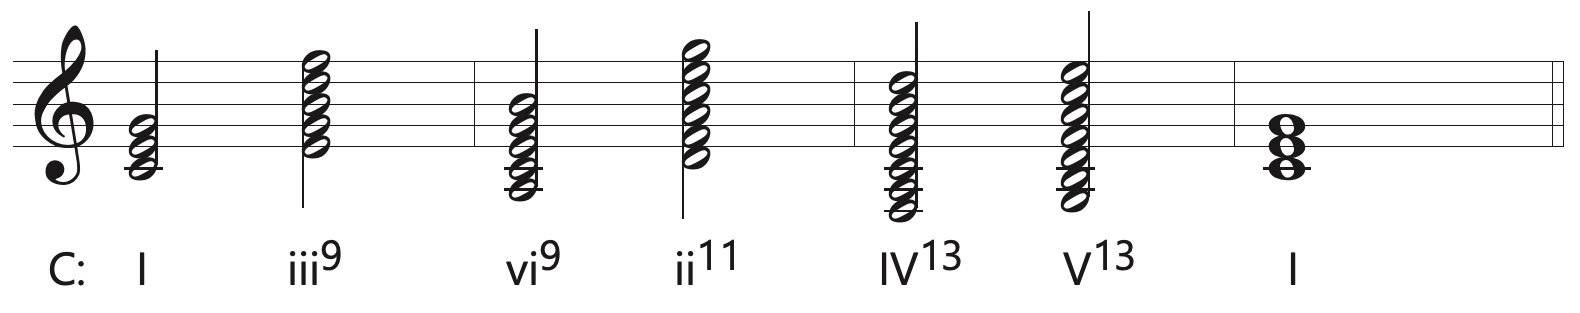 tall chord progression